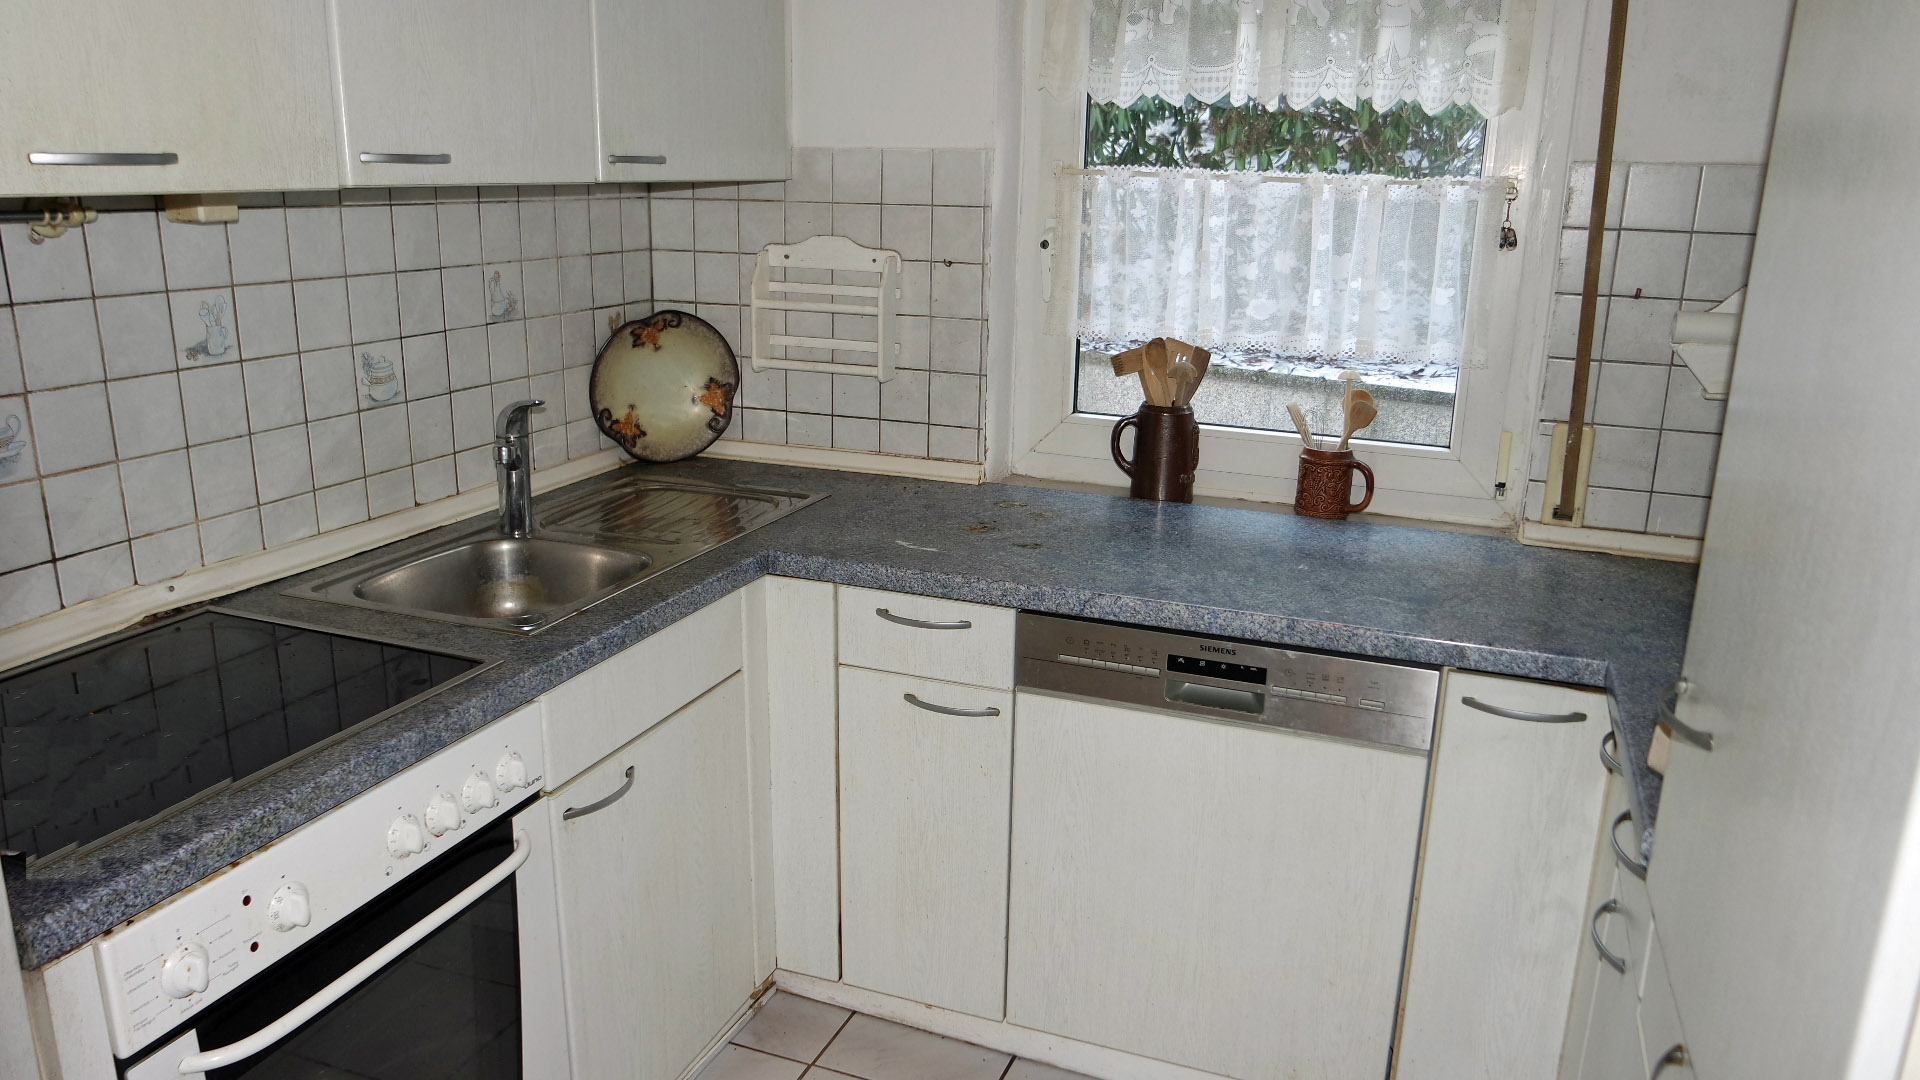 Morsbach: Kleines, preiswertes Wohnhaus mit herrlichem Blick, ...angrenzenden kleinen Kochküche